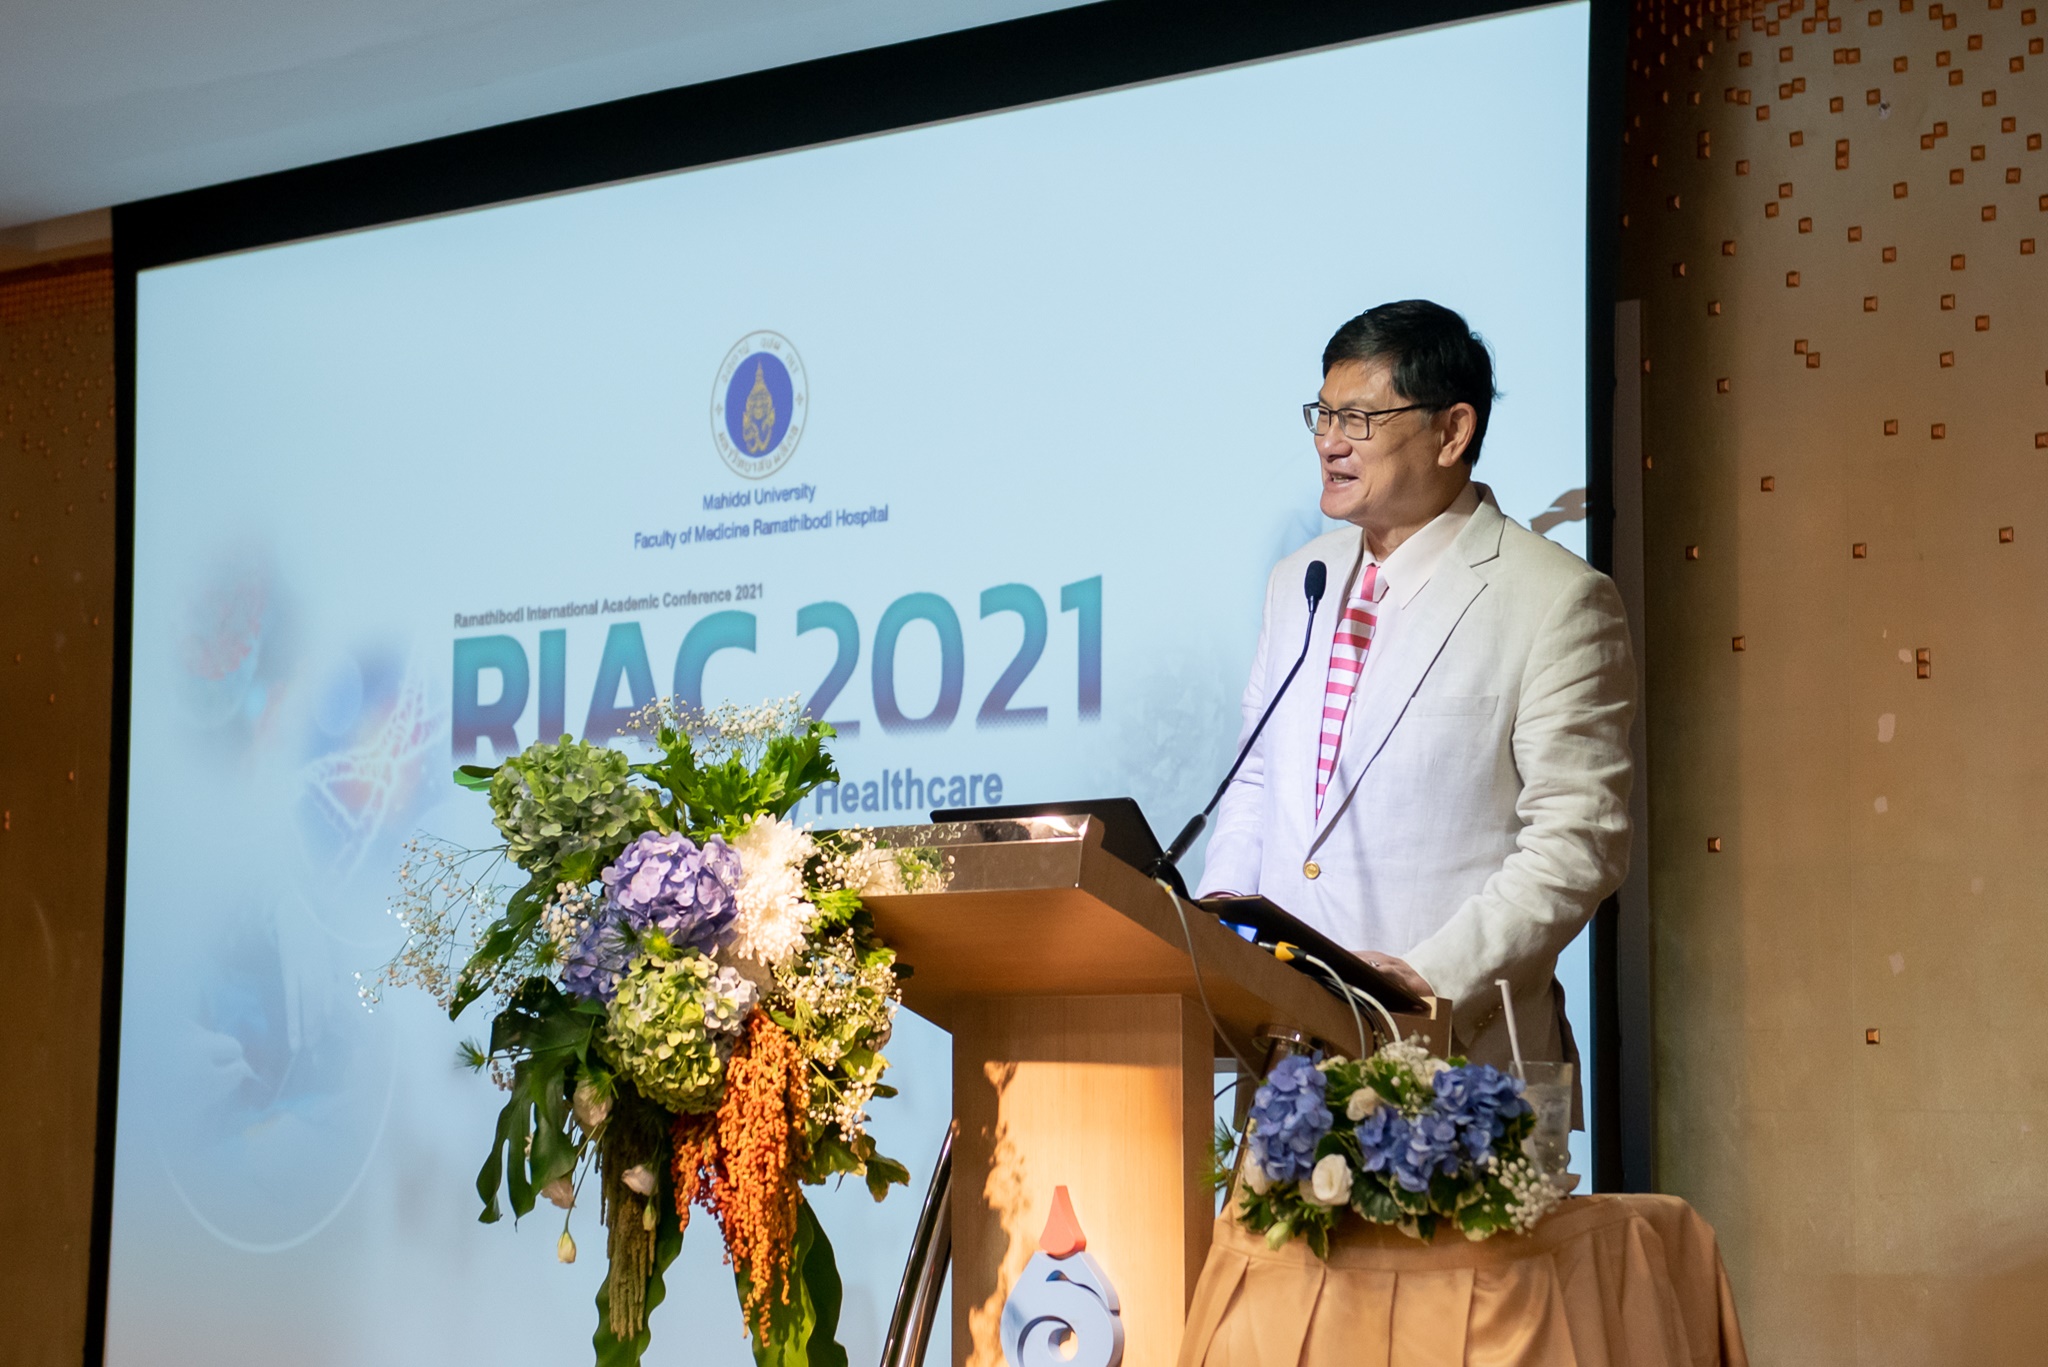 งานประชุมวิชาการ RIAC 2021 และงานปาฐกถาอารี วัลยะเสวี ครั้งที่ 34